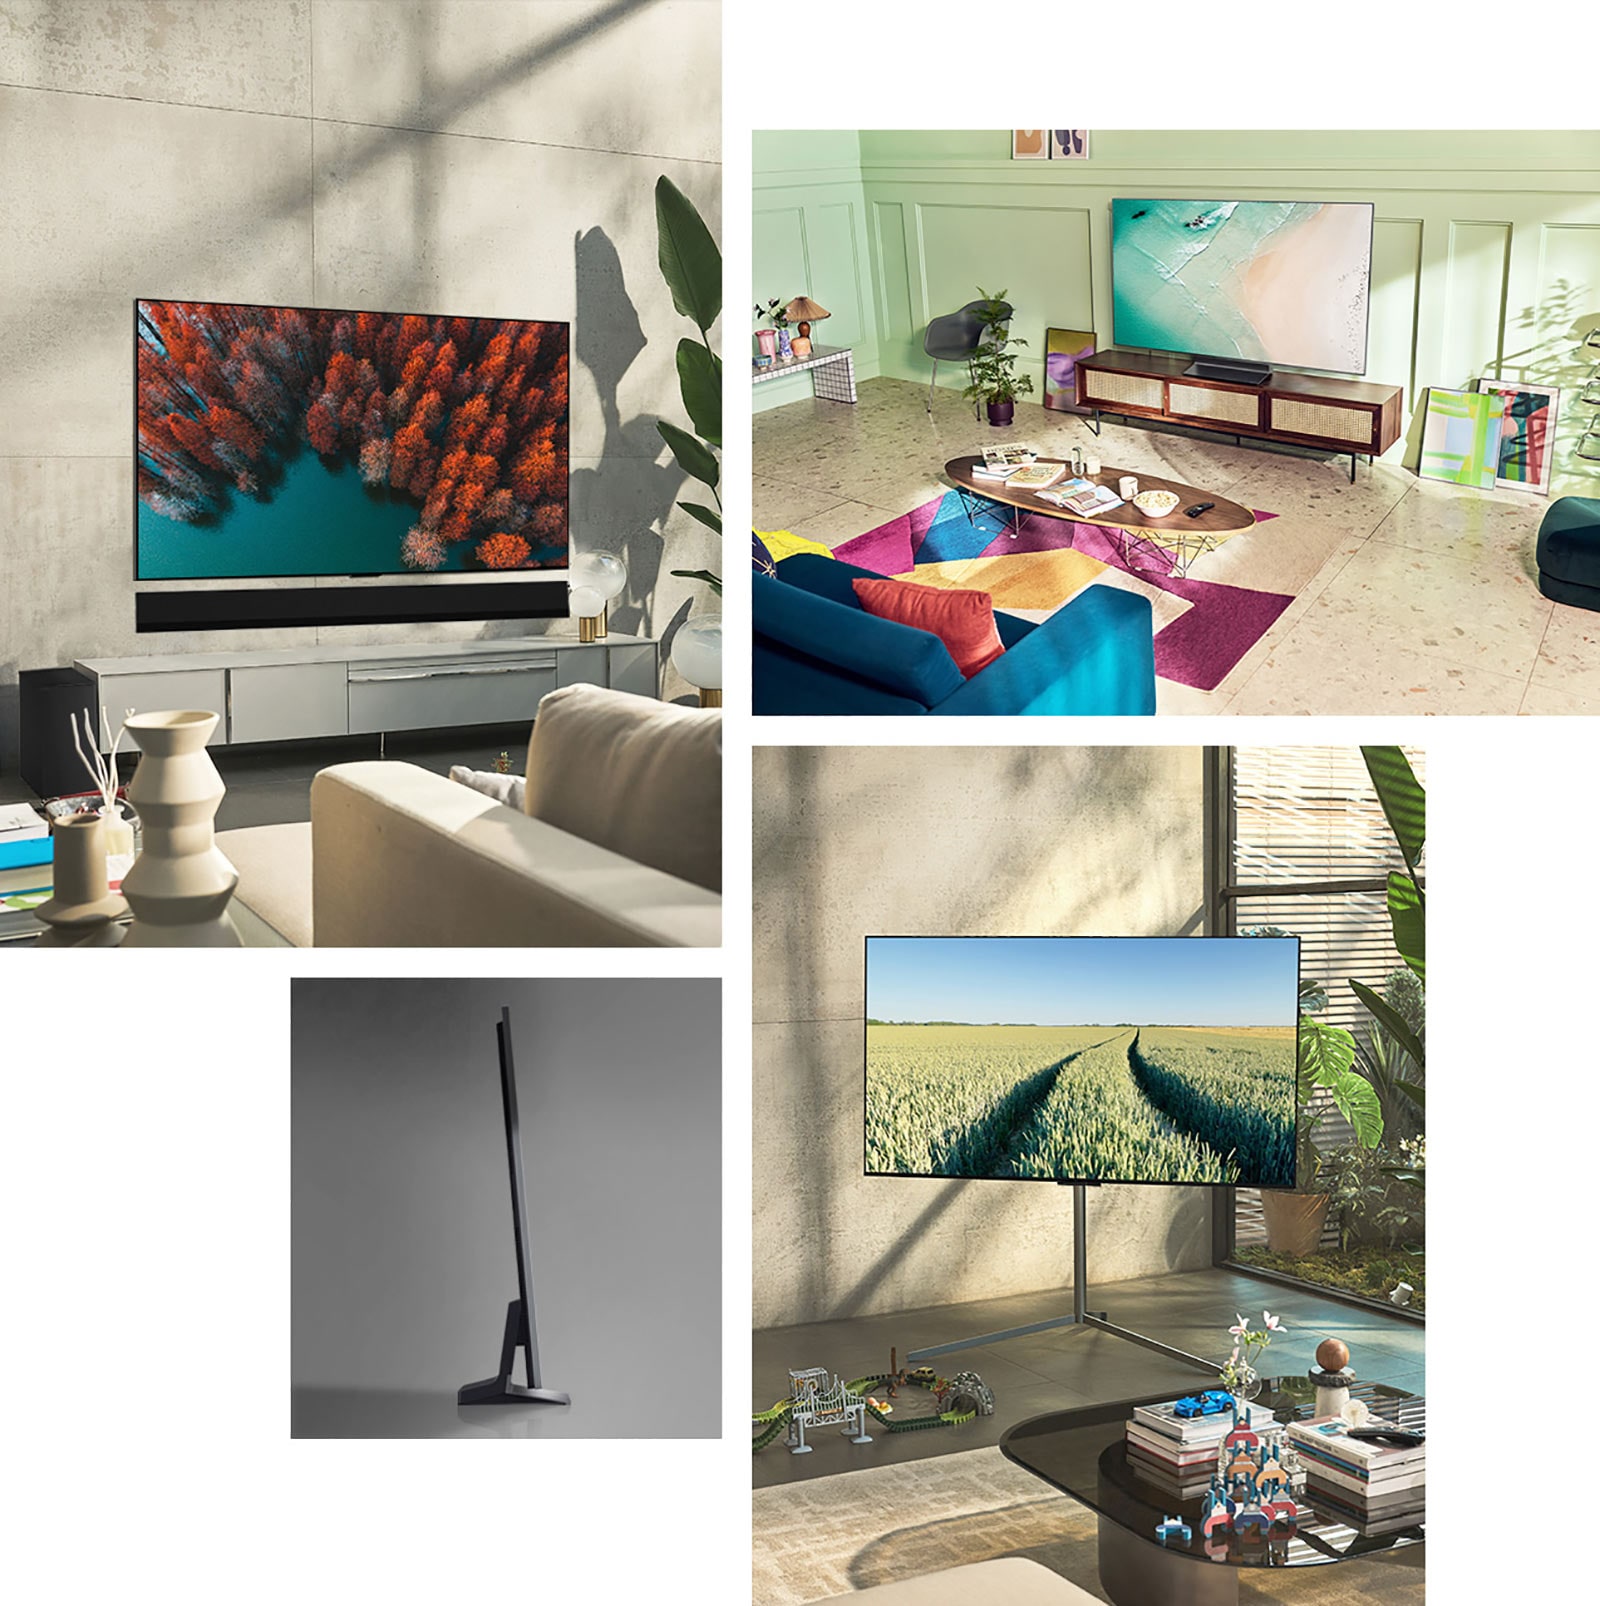 LG OLED G2 visí na stěně v obývacím pokoji s rostlinami, hromadou knih a skříňkou ve vintage stylu. LG OLED G2 visí na stěně v minimalisticky vypadajícím pokoji vedle police s černobílými ornamenty. Boční pohled na ultratenkou hranu LG OLED G2. LG OLED G2 visí na barevné obývací stěně s vyprahlou planetou, aroma difuzérem a vázami. Detail hrany ultratenkého LG OLED G2. 